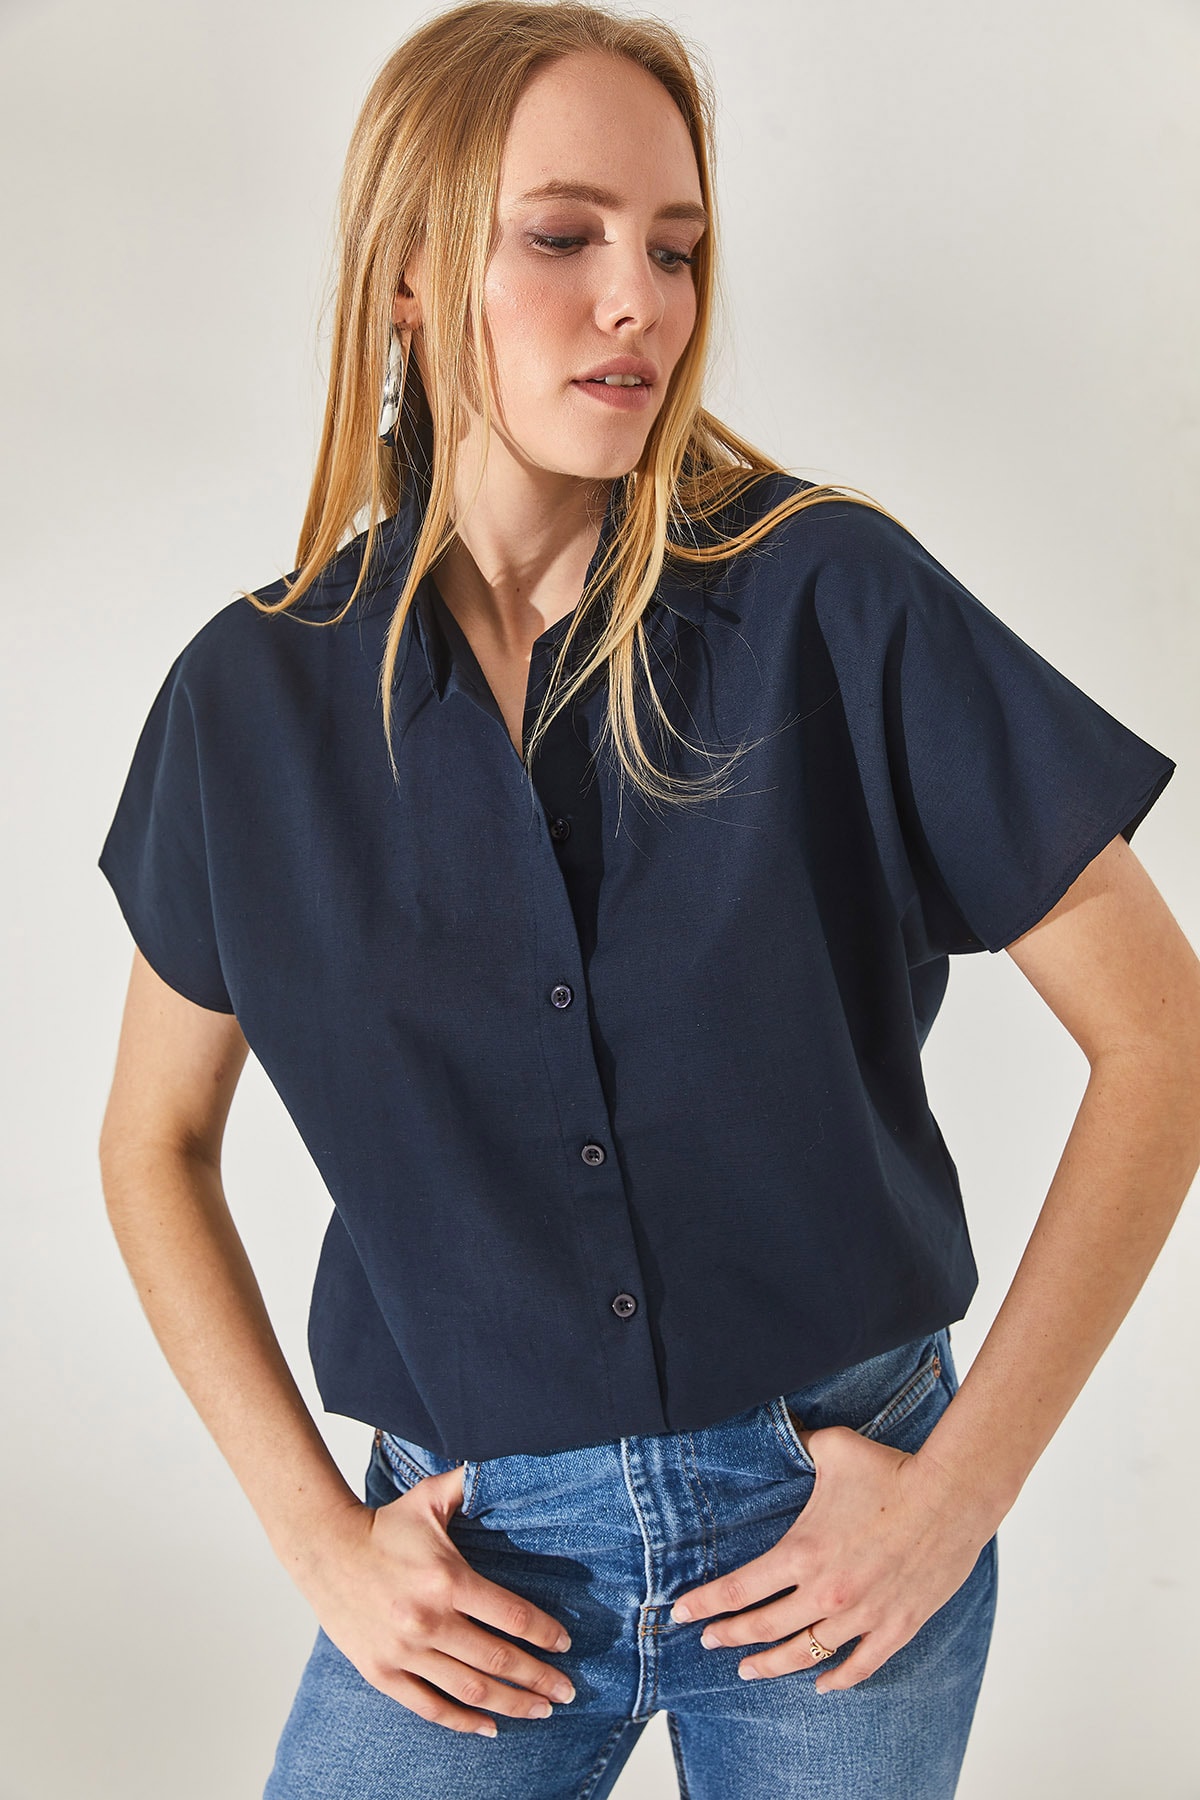 Olalook Women's Navy Blue Bat Oversized Linen Shirt